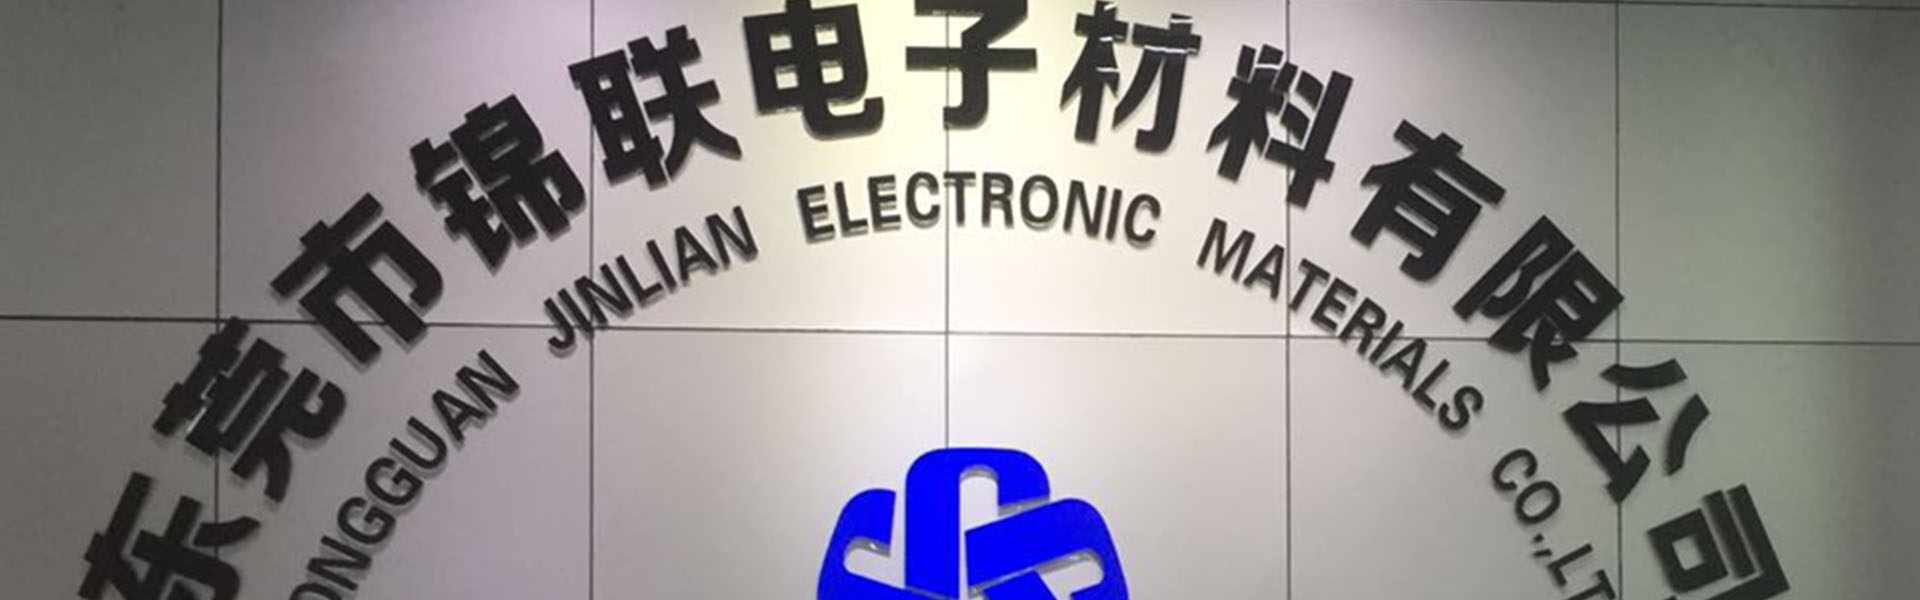 صندوق نفطة ، صينية ، شريط الناقل,Dongguan Jinlian Electronic Materials Co., Ltd